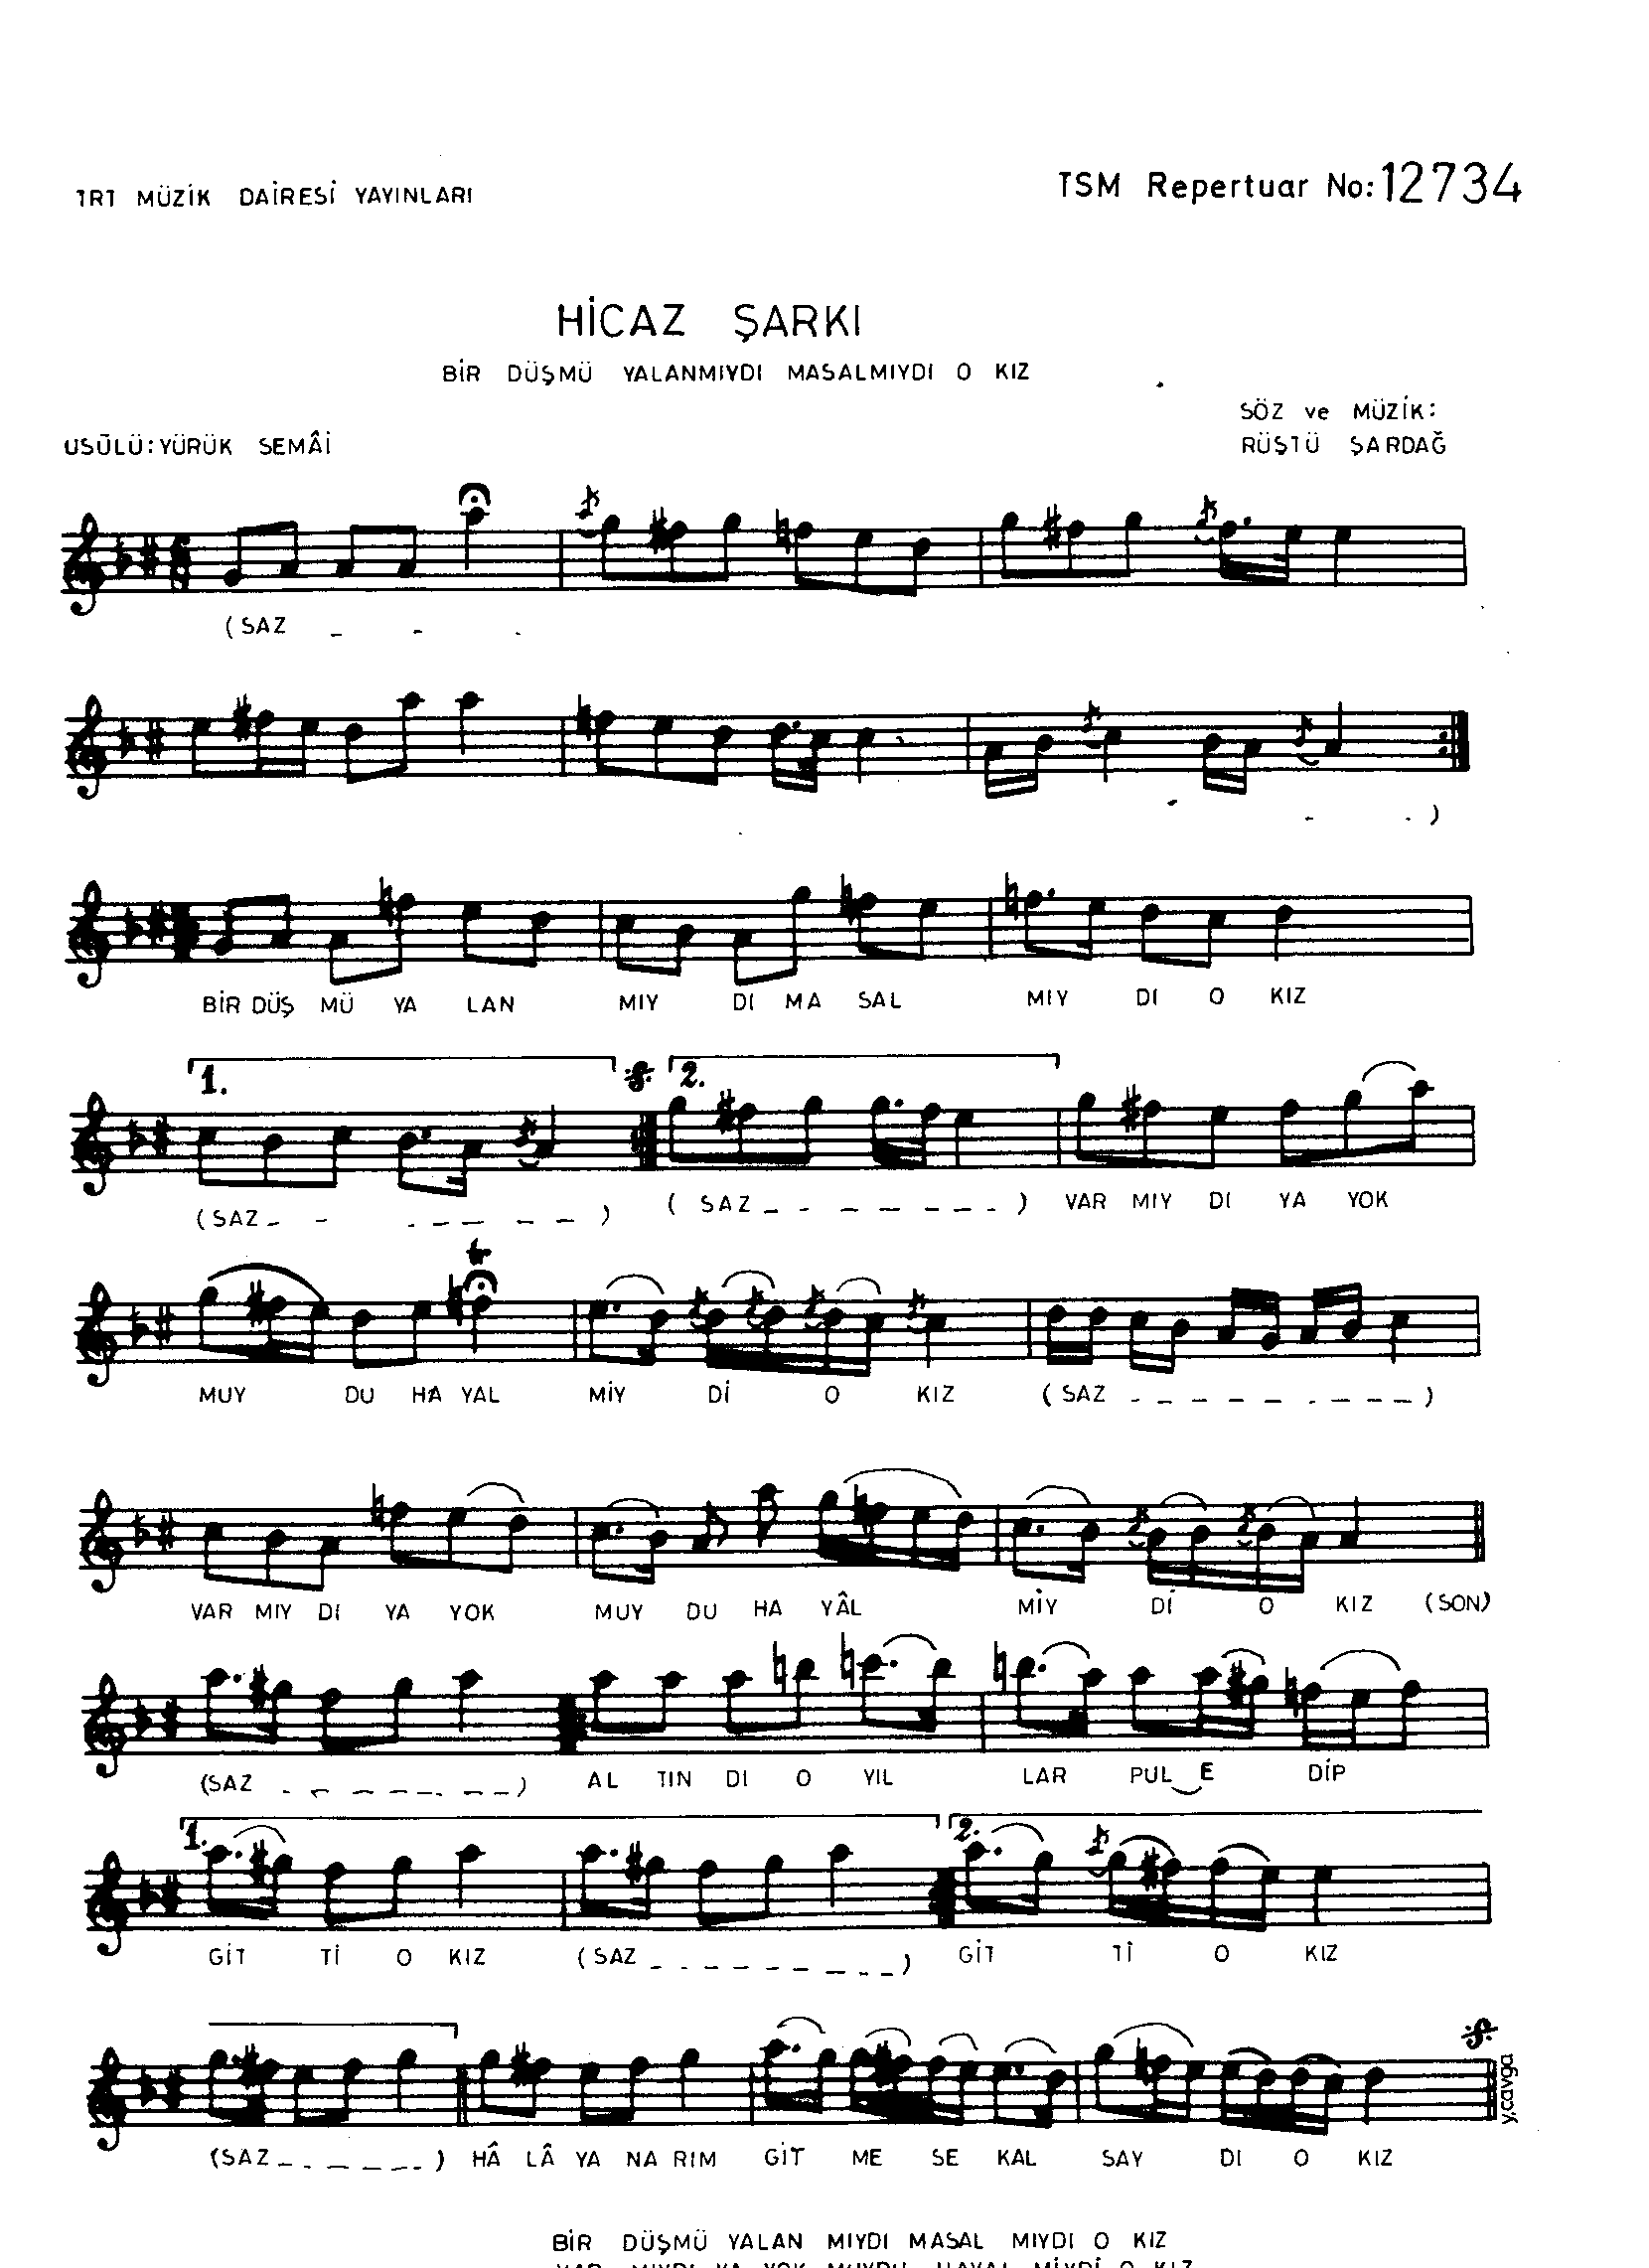 Hicâz - Şarkı - Rüştü Şardağ - Sayfa 1